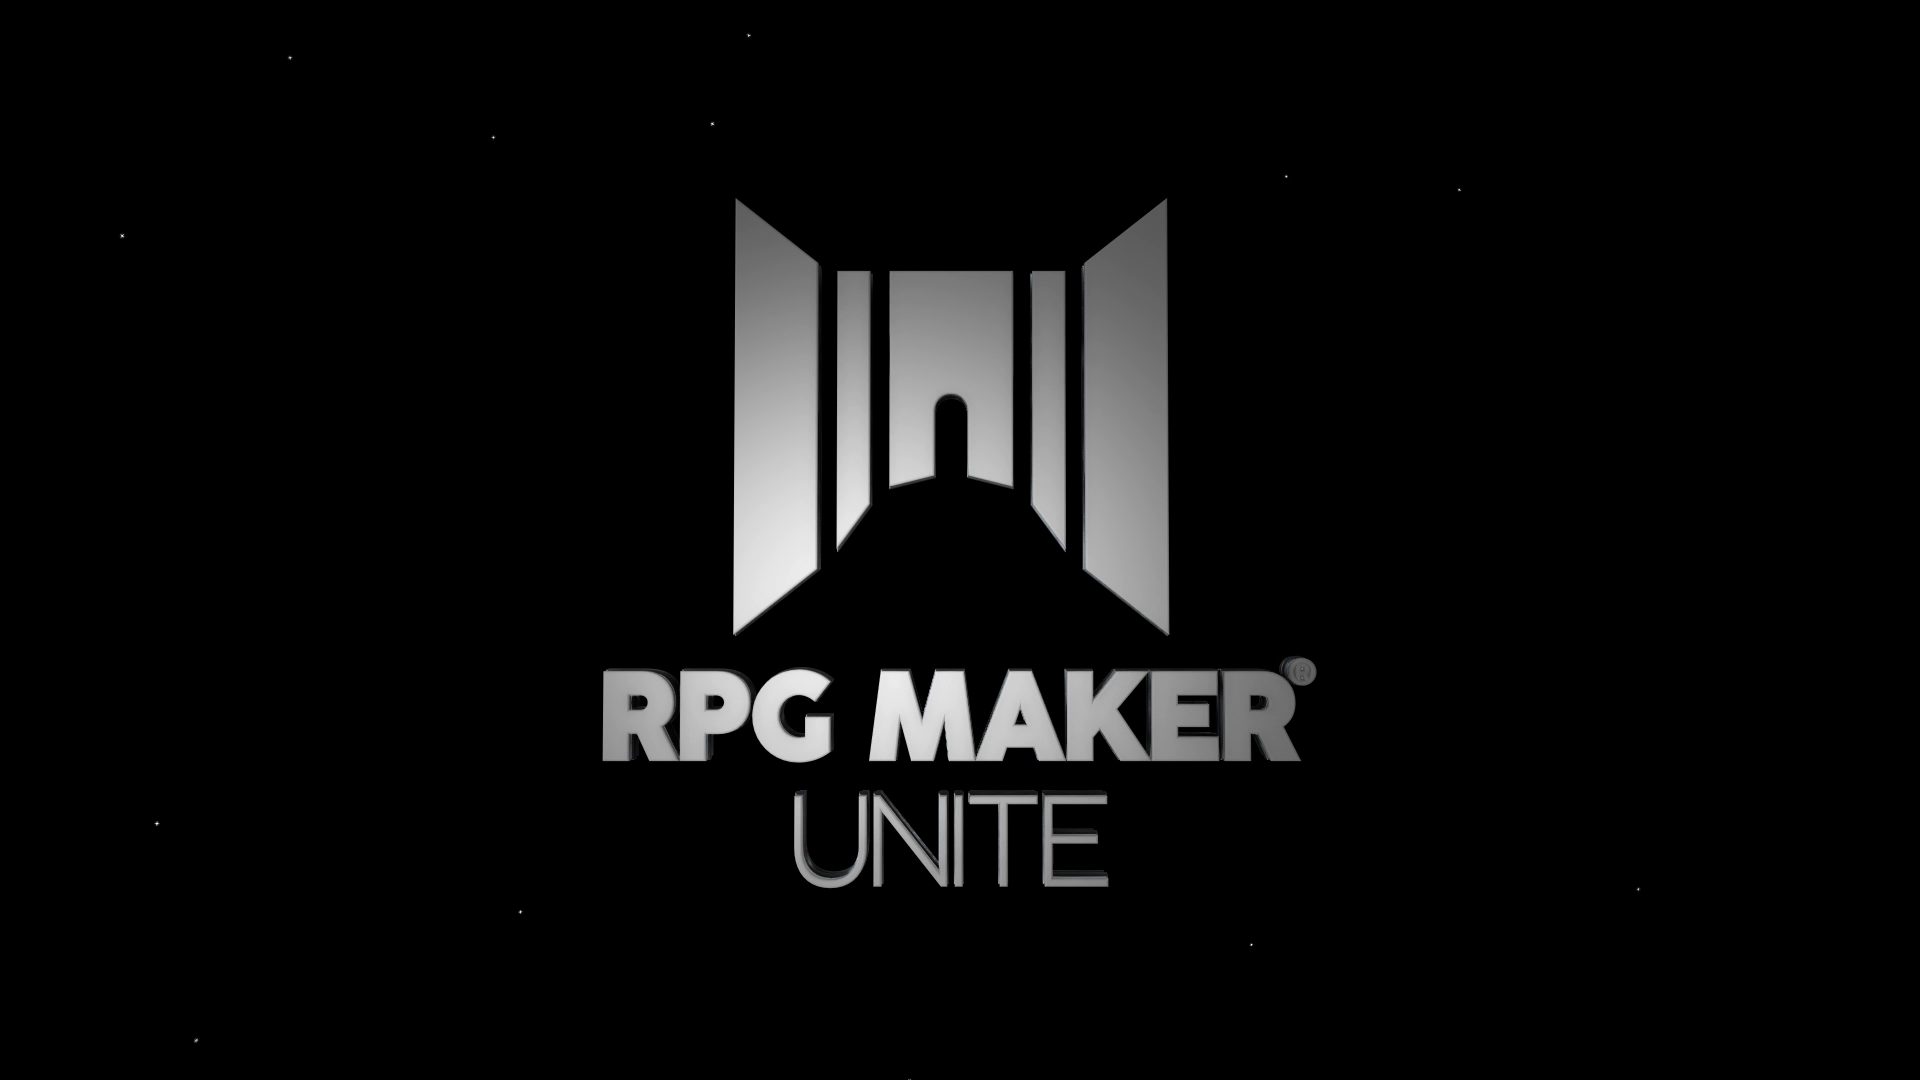 RPG Maker Unite (PC) será lançado em 6 de abril - GameBlast